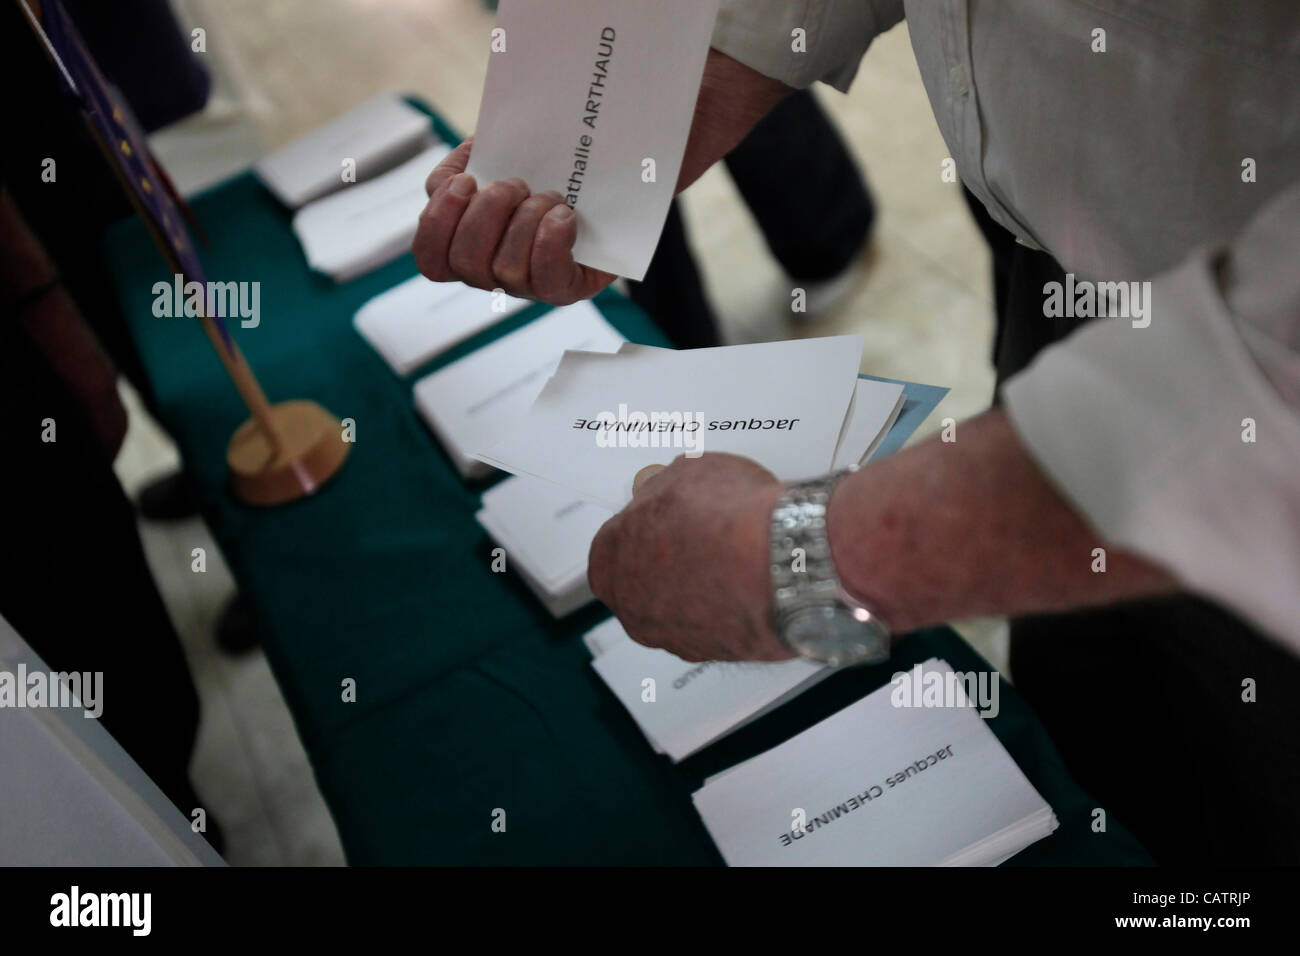 Ein israelischer Staatsbürger französischer Nationalität nimmt vor der Stimmabgabe für die französischen Präsidentschaftswahlen am 22. April 2012 in einer Wahlstation des französischen Konsulats in Tel Aviv, Israel, die Stimmabgabe ab. Stockfoto